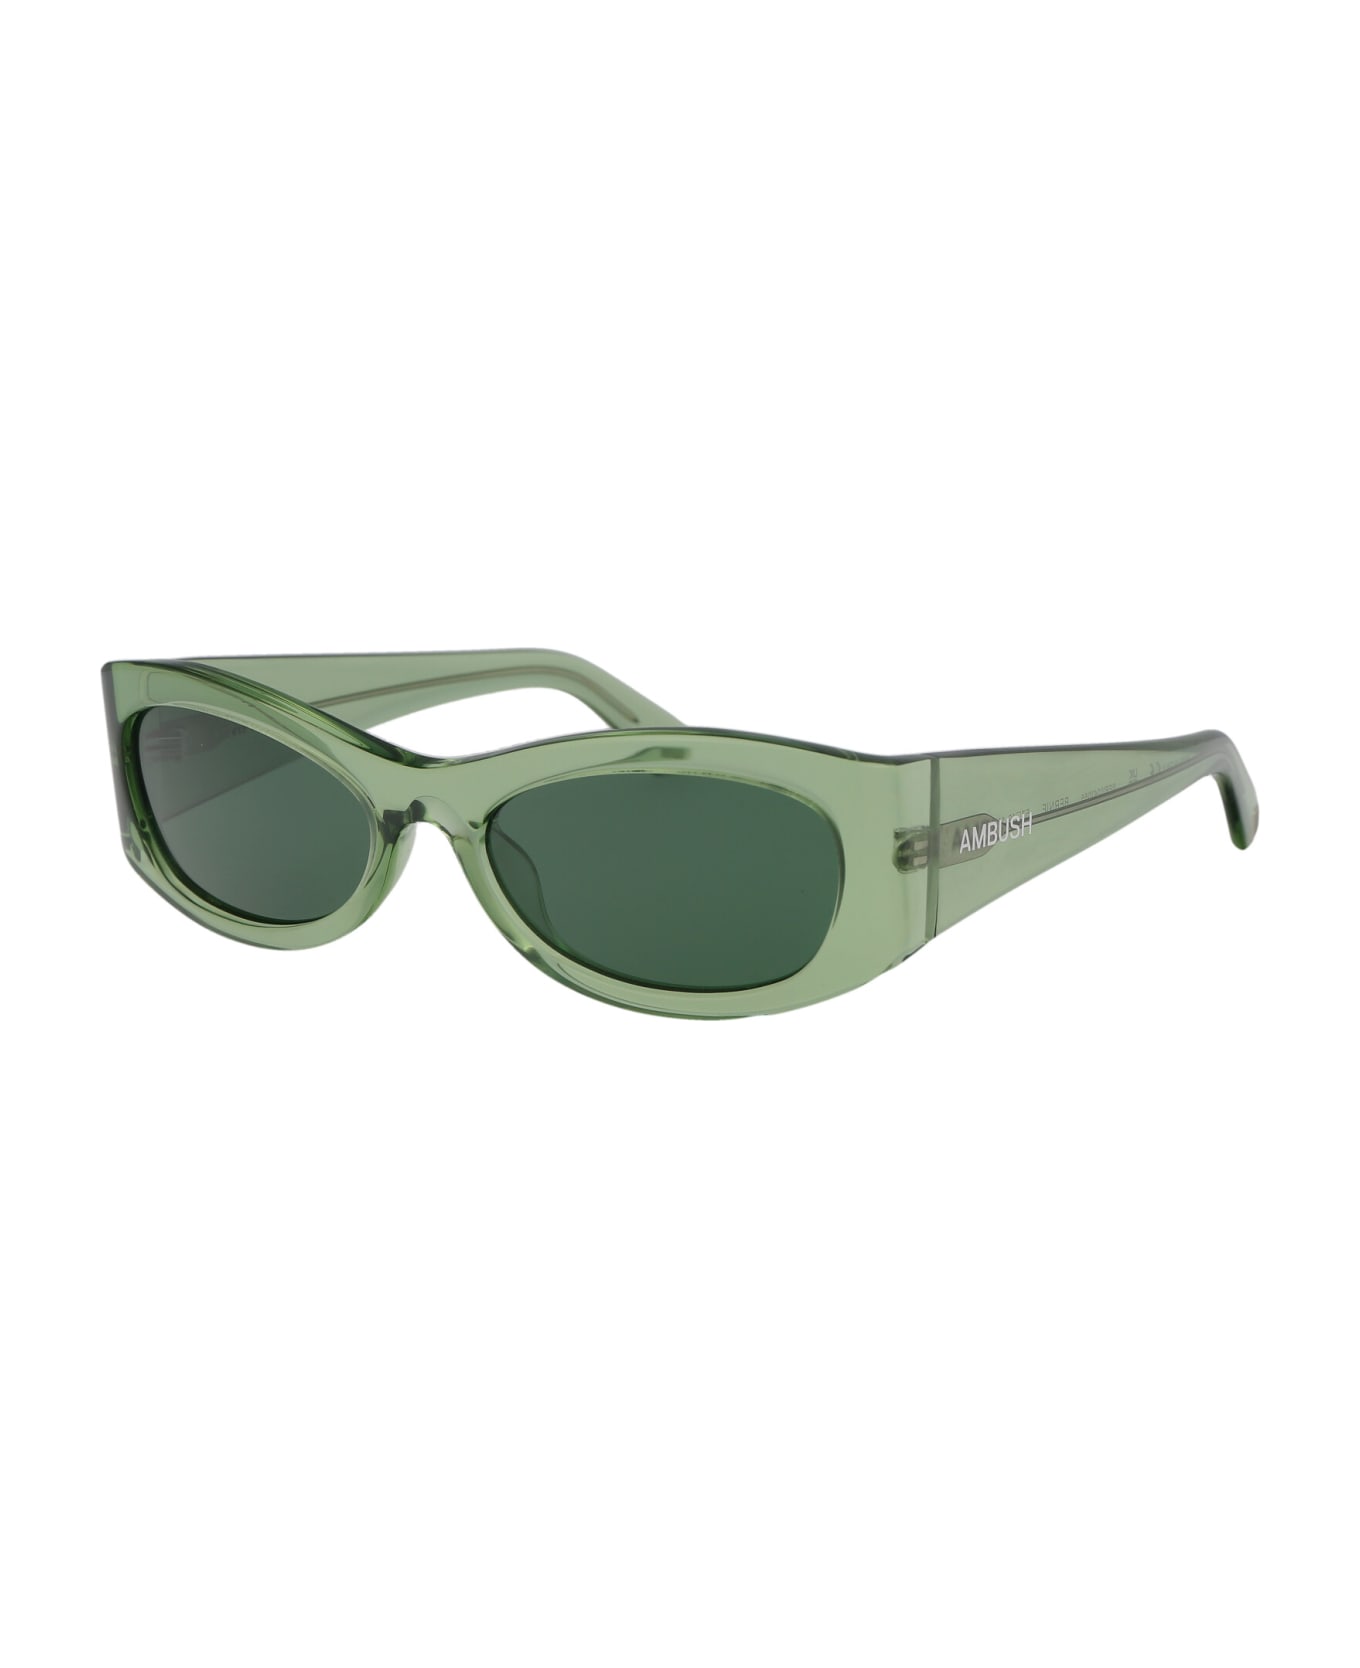 AMBUSH Bernie Sunglasses - 7055 GREEN